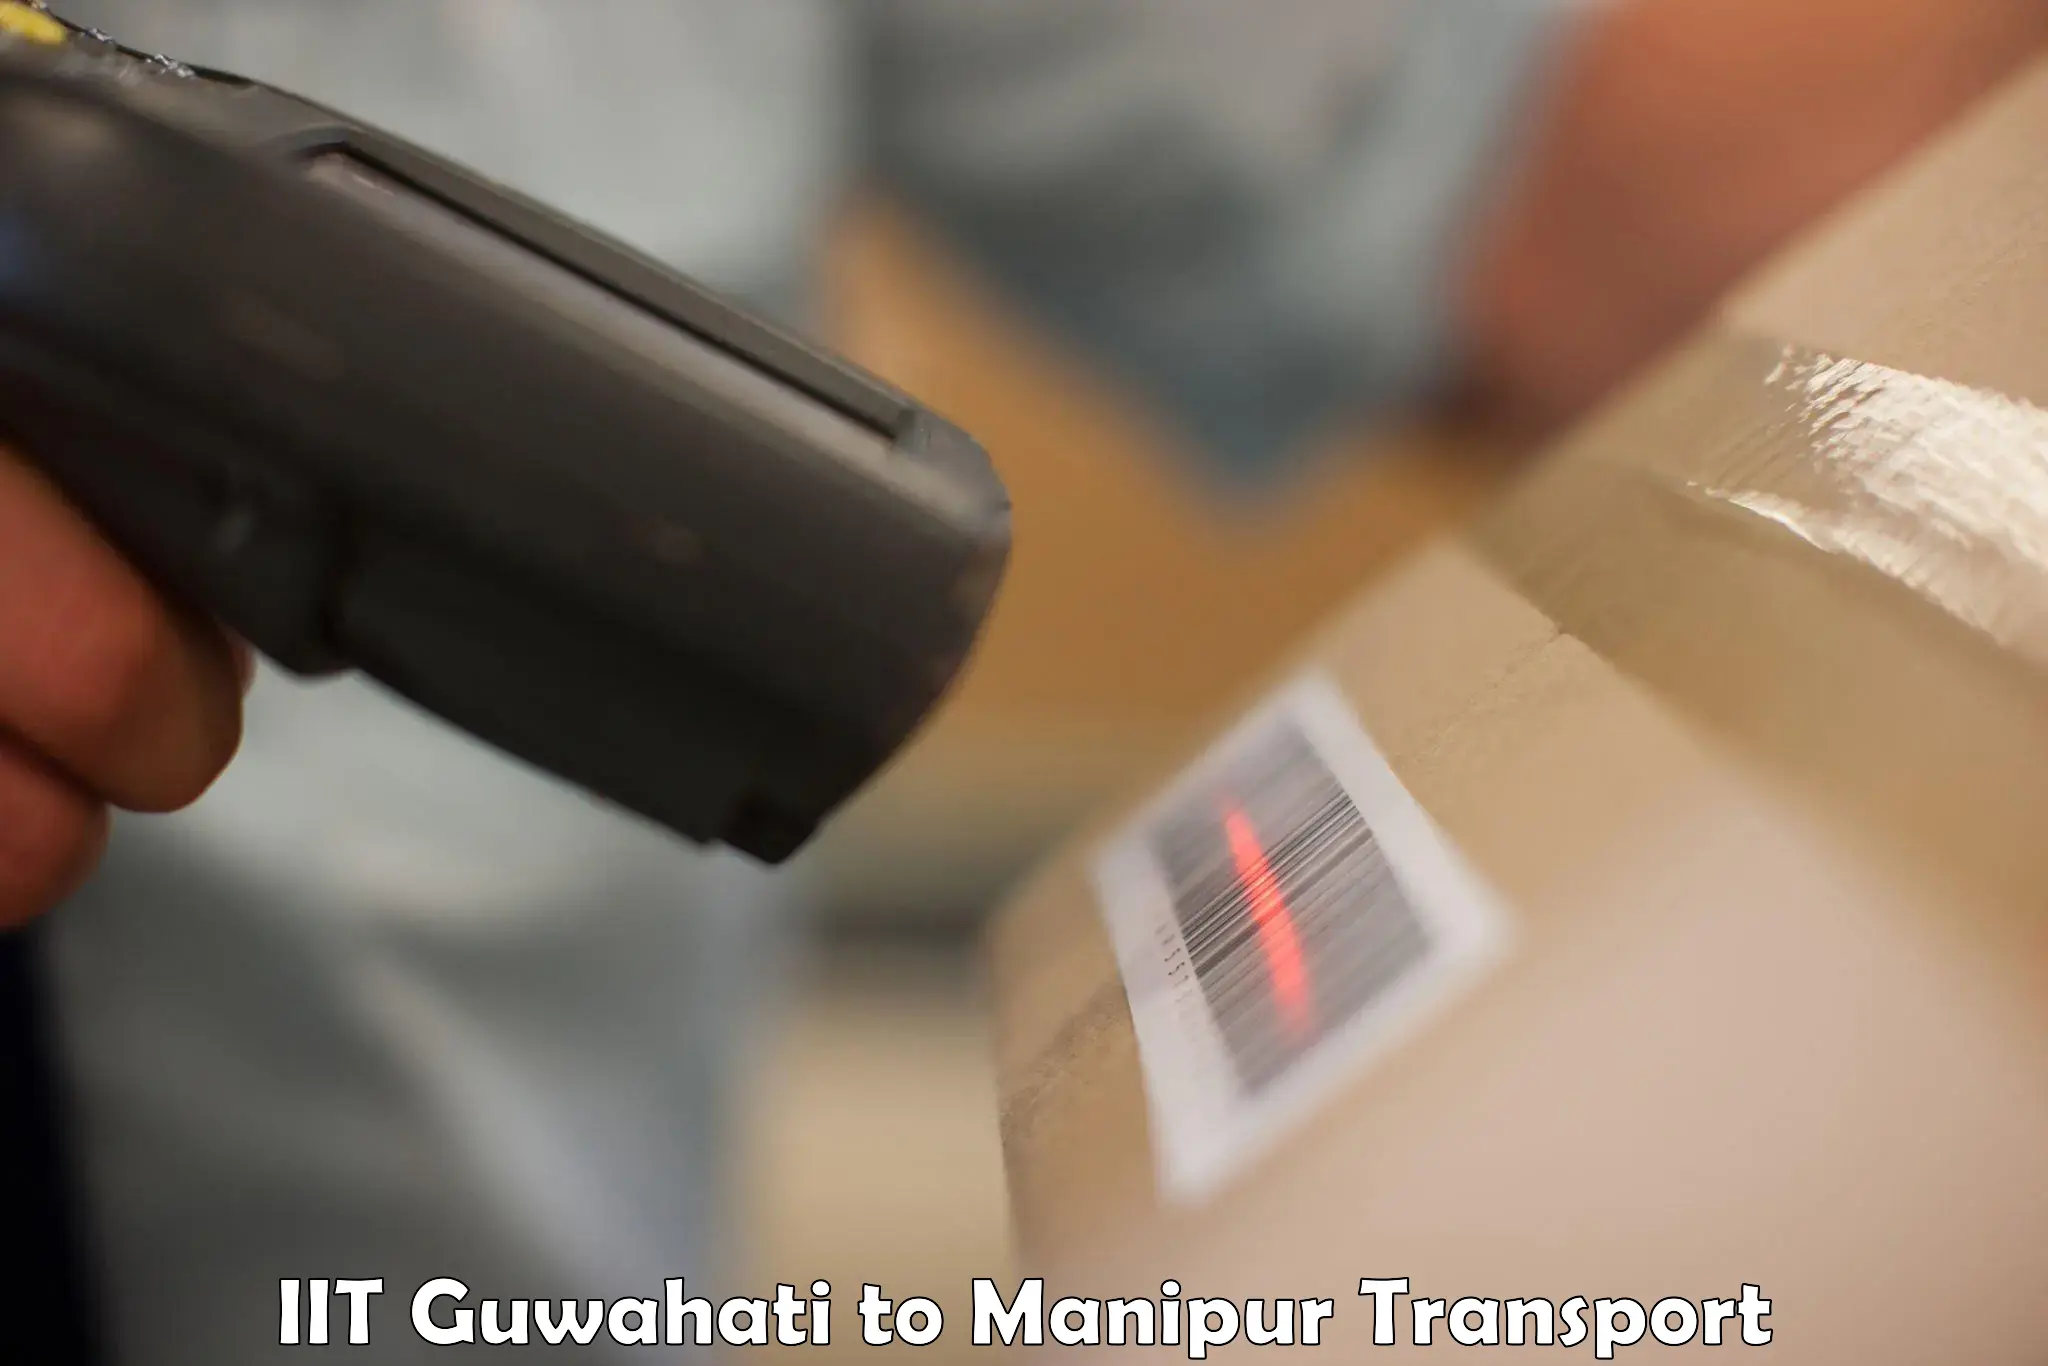 Online transport service IIT Guwahati to Manipur